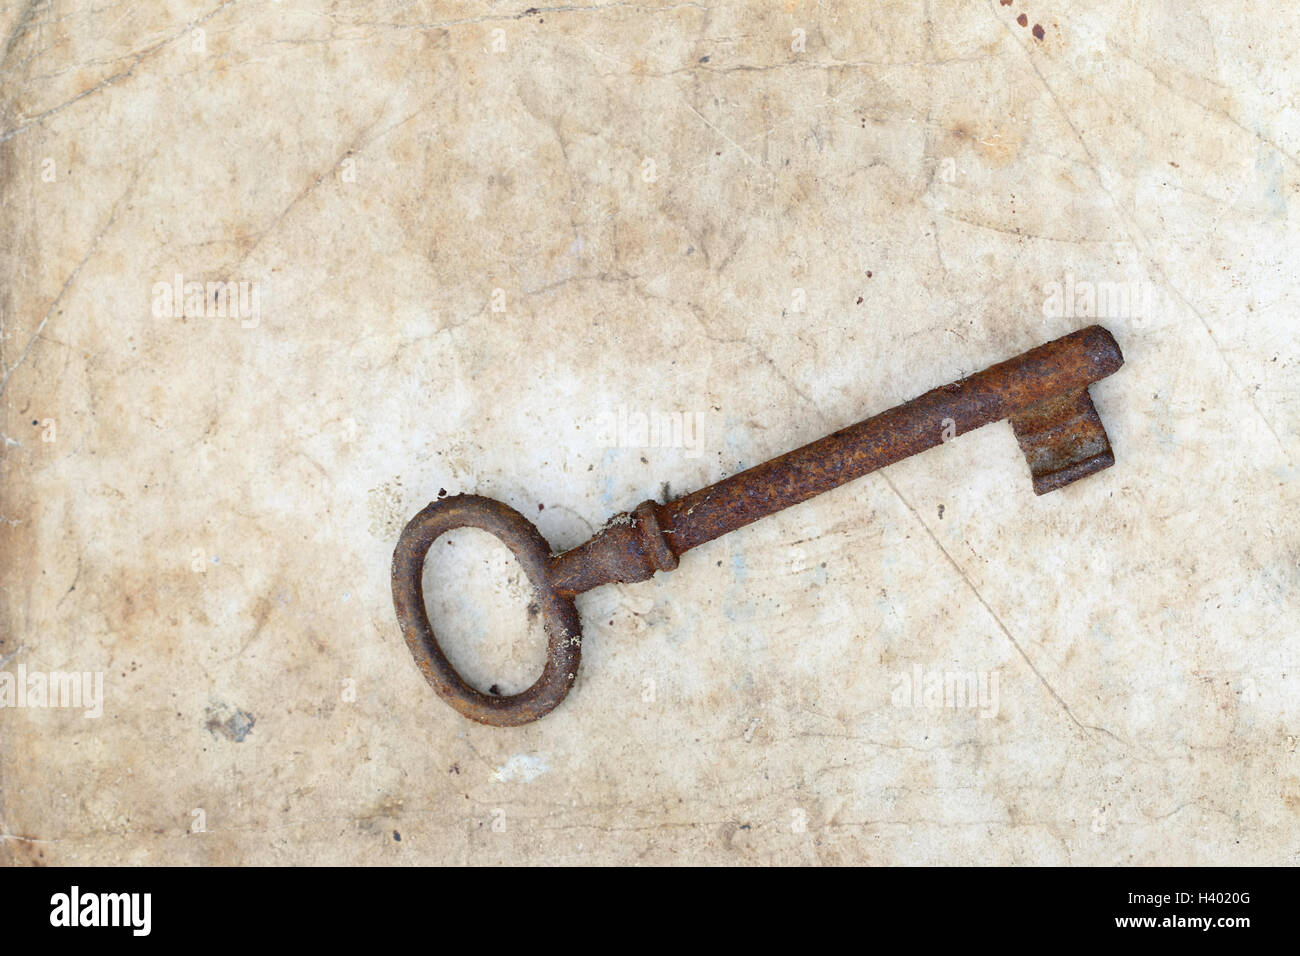 Rusty key sur vieux parchemin Banque D'Images